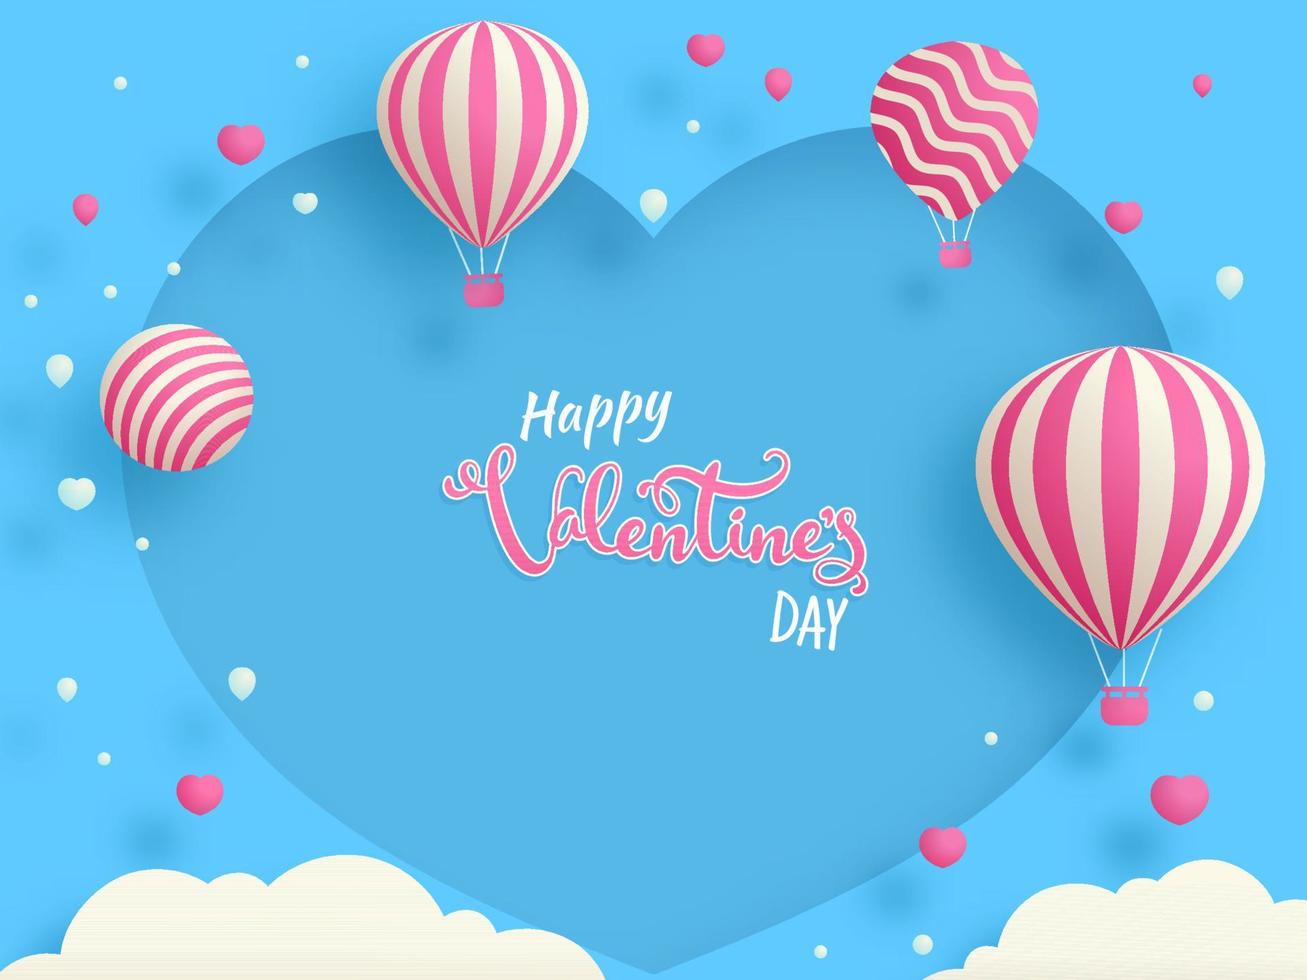 gelukkig Valentijnsdag dag doopvont met heet lucht ballonnen, gebied, wolken versierd blauw hart vorm achtergrond. vector